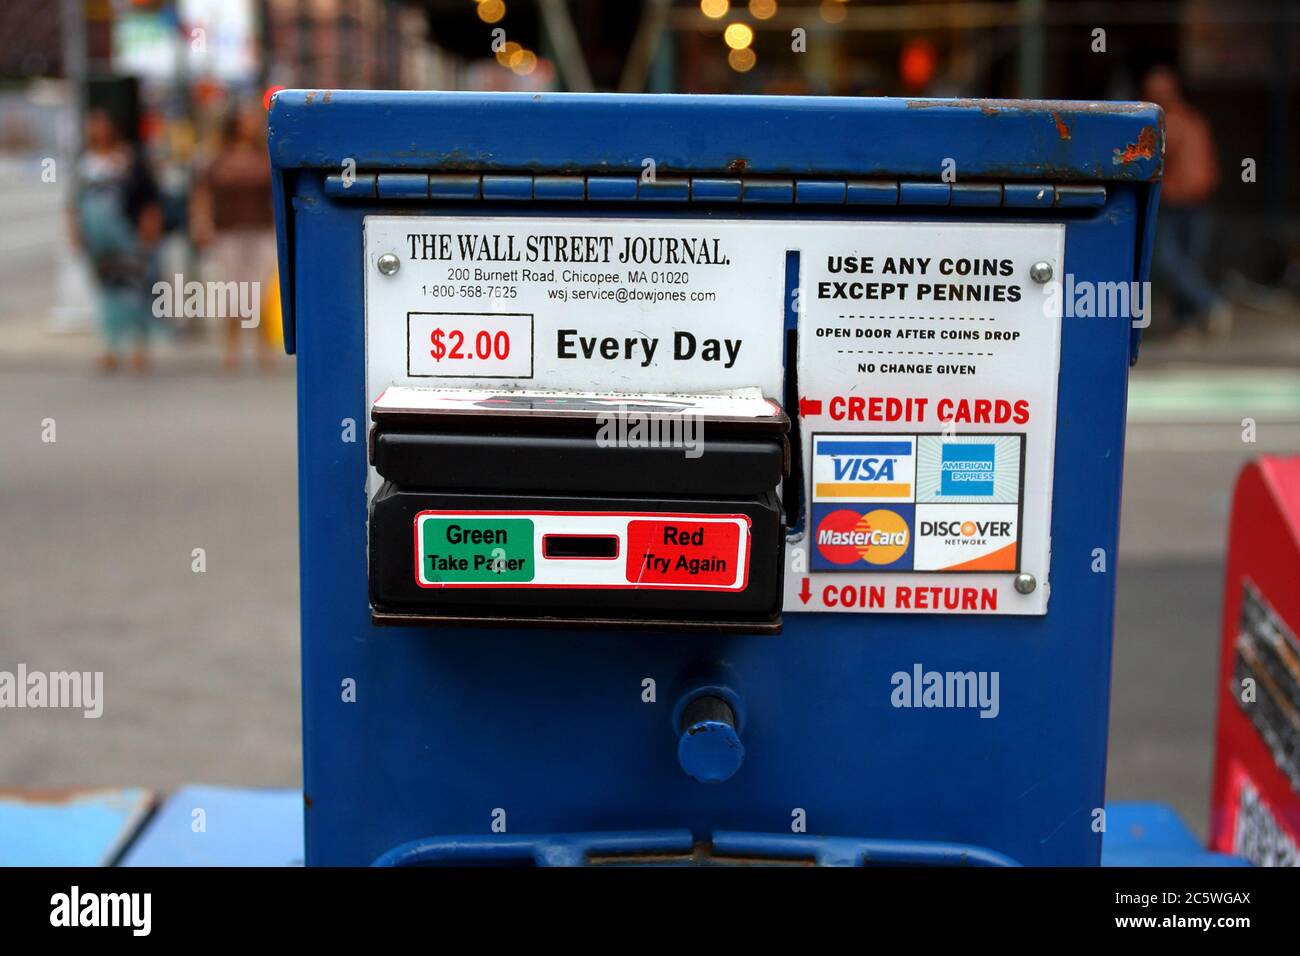 Une boîte de journaux sur le trottoir du Wall Street Journal avec option de paiement par carte de crédit Banque D'Images